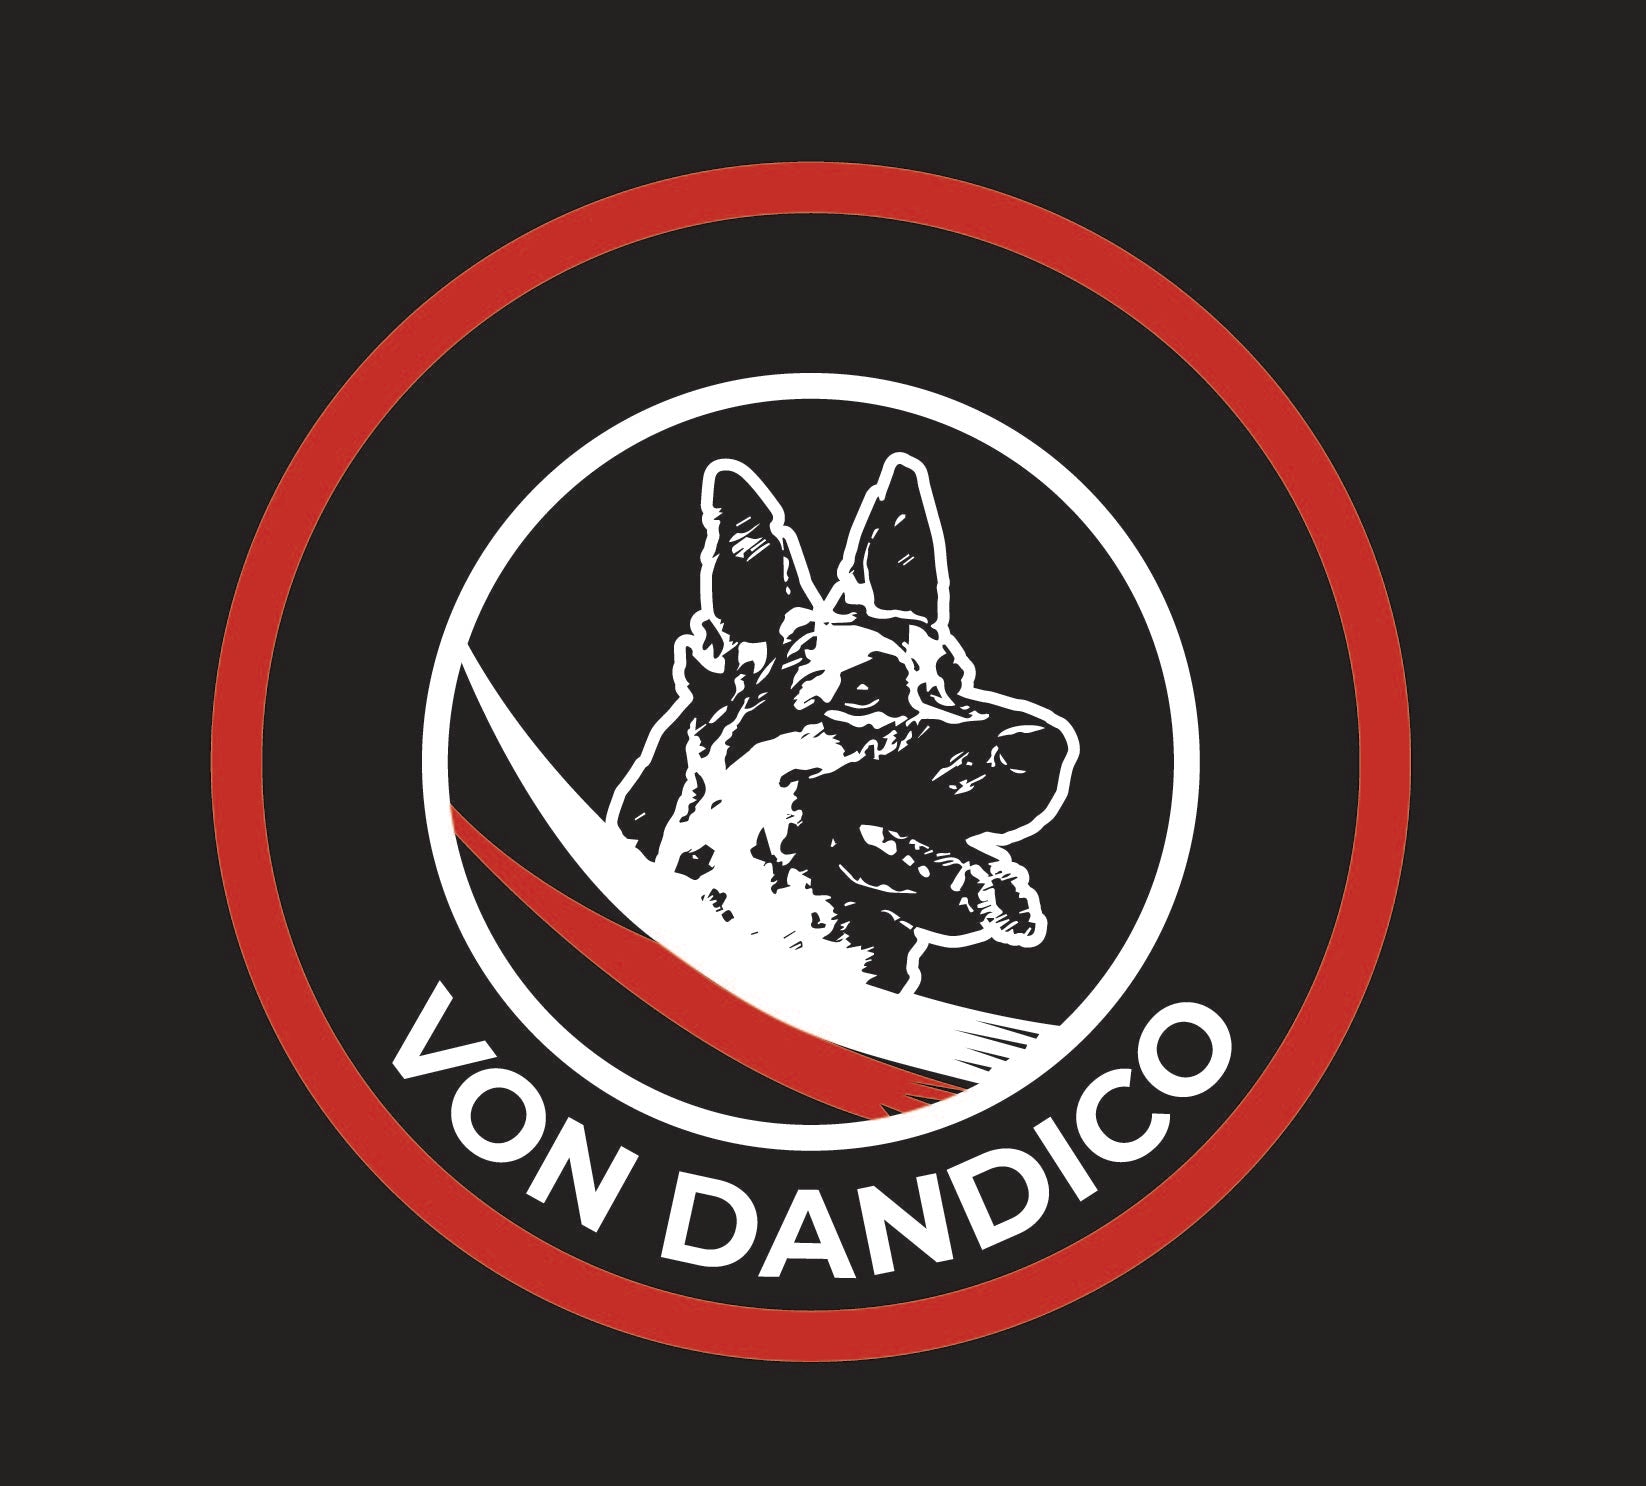 Chandail molleton noir - Von Dandicoo